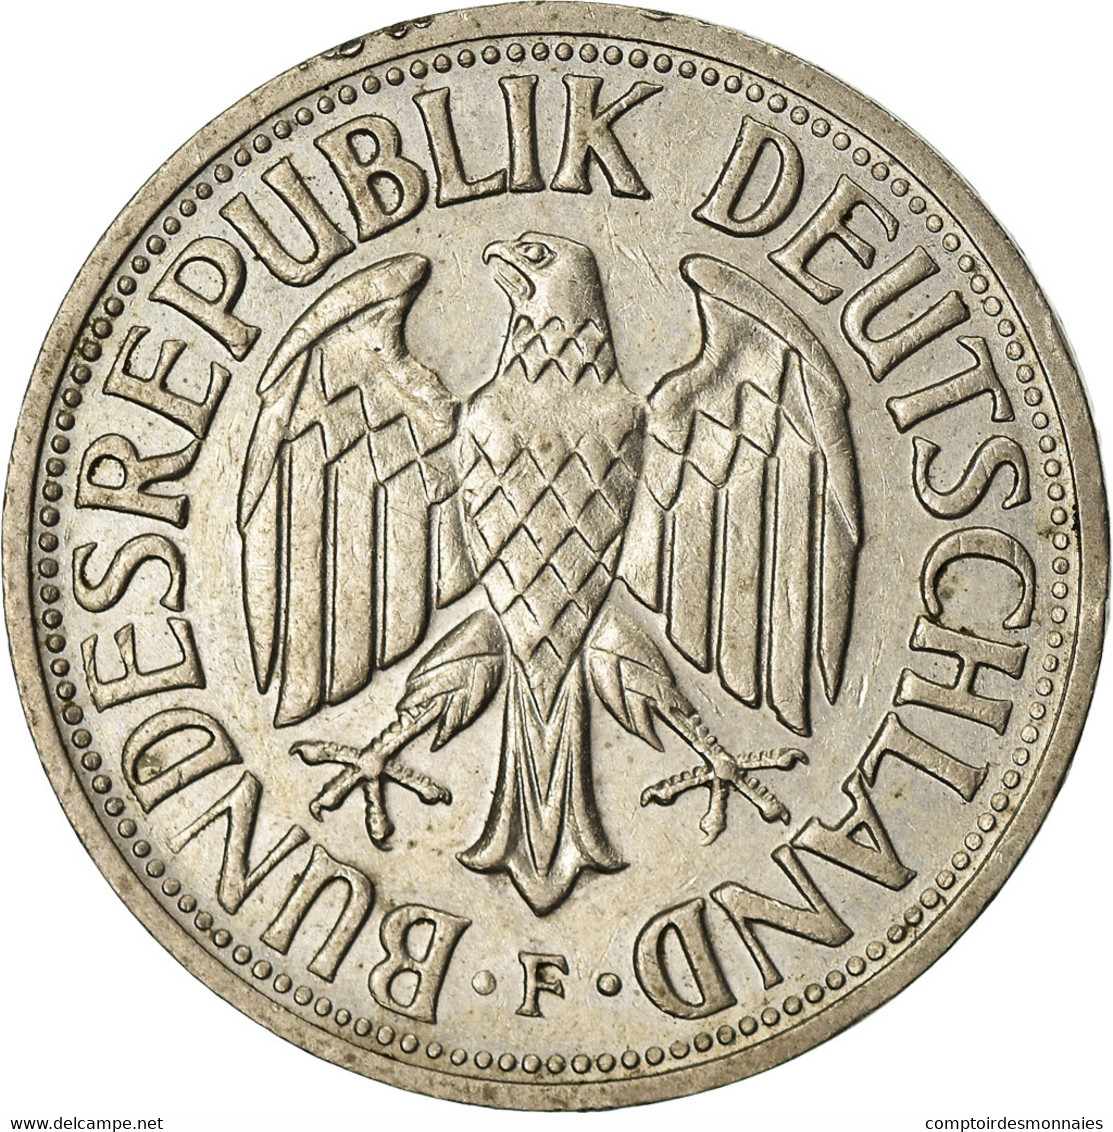 Monnaie, République Fédérale Allemande, Mark, 1950, Stuttgart, TTB+ - 1 Mark